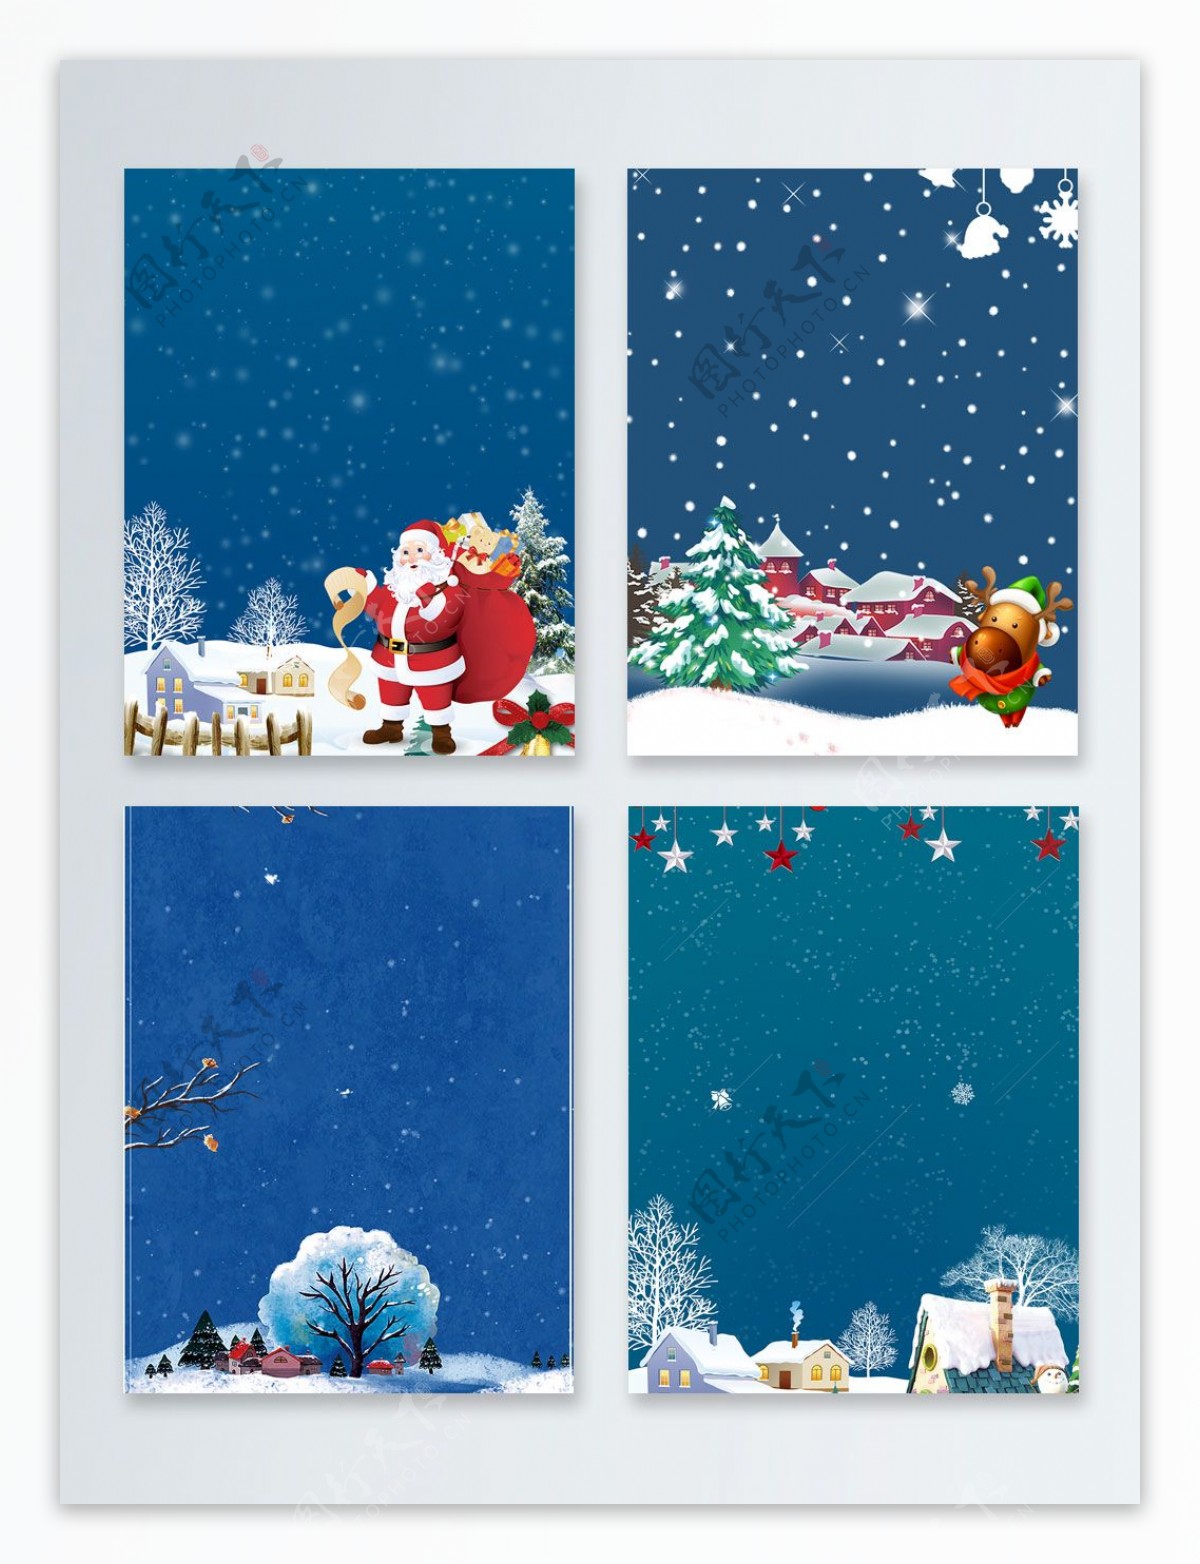 蓝色飘雪手绘卡通圣诞节背景图